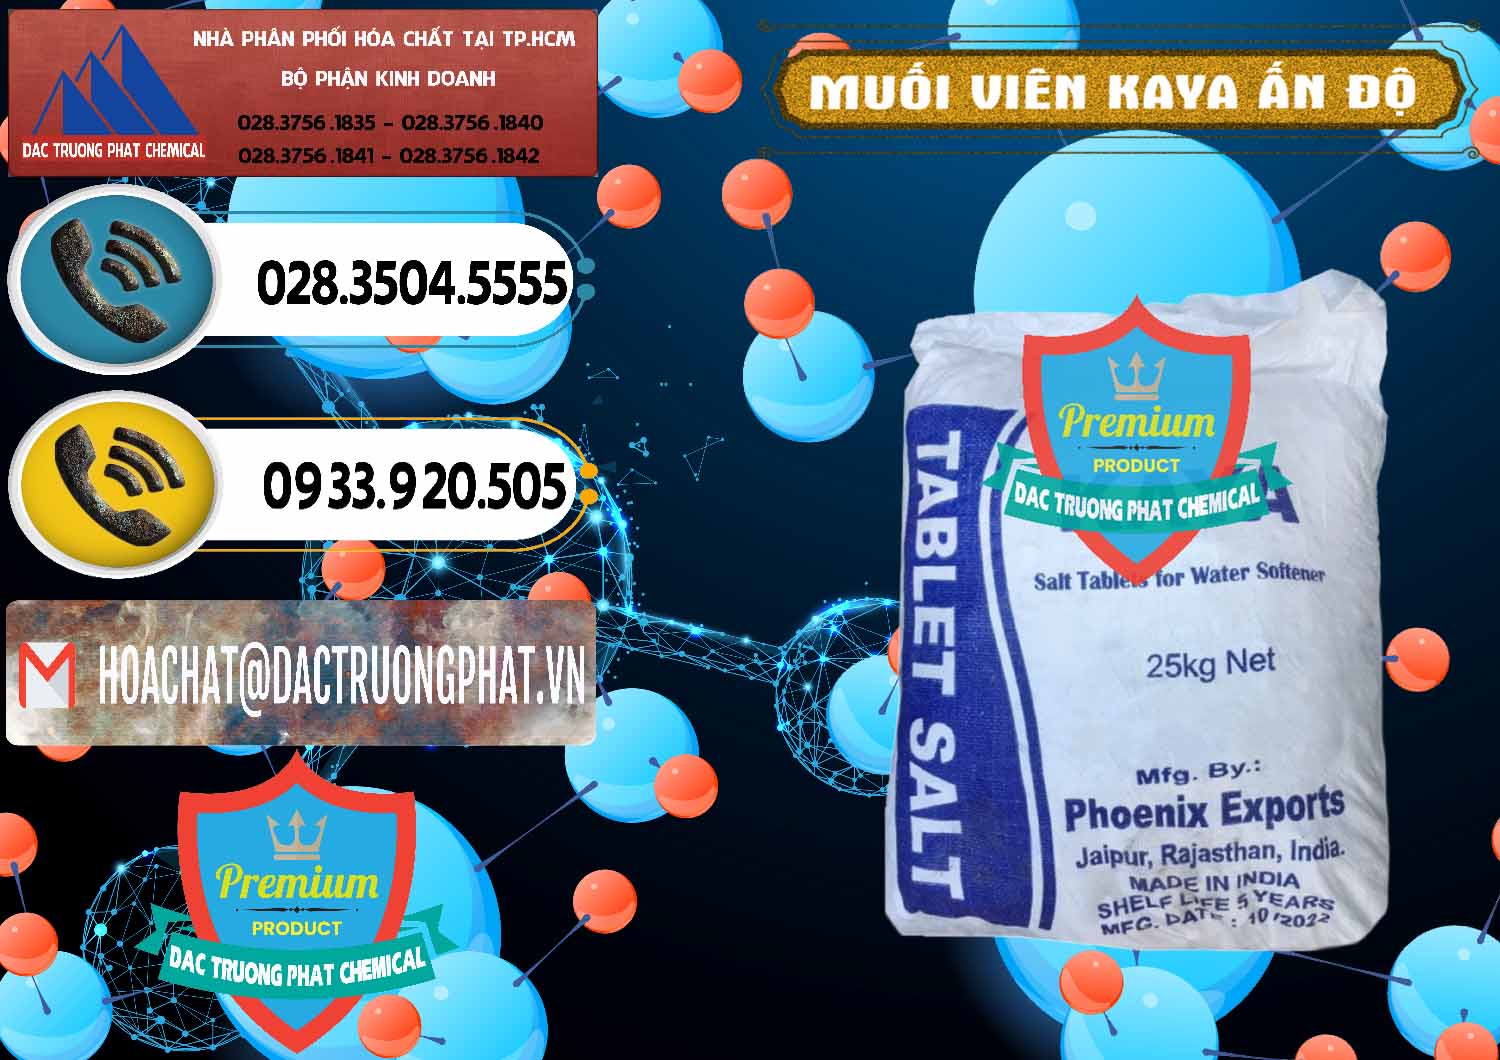 Nơi chuyên bán _ cung cấp Muối NaCL – Sodium Chloride Dạng Viên Tablets Kaya Ấn Độ India - 0368 - Nhà nhập khẩu _ phân phối hóa chất tại TP.HCM - hoachatdetnhuom.vn